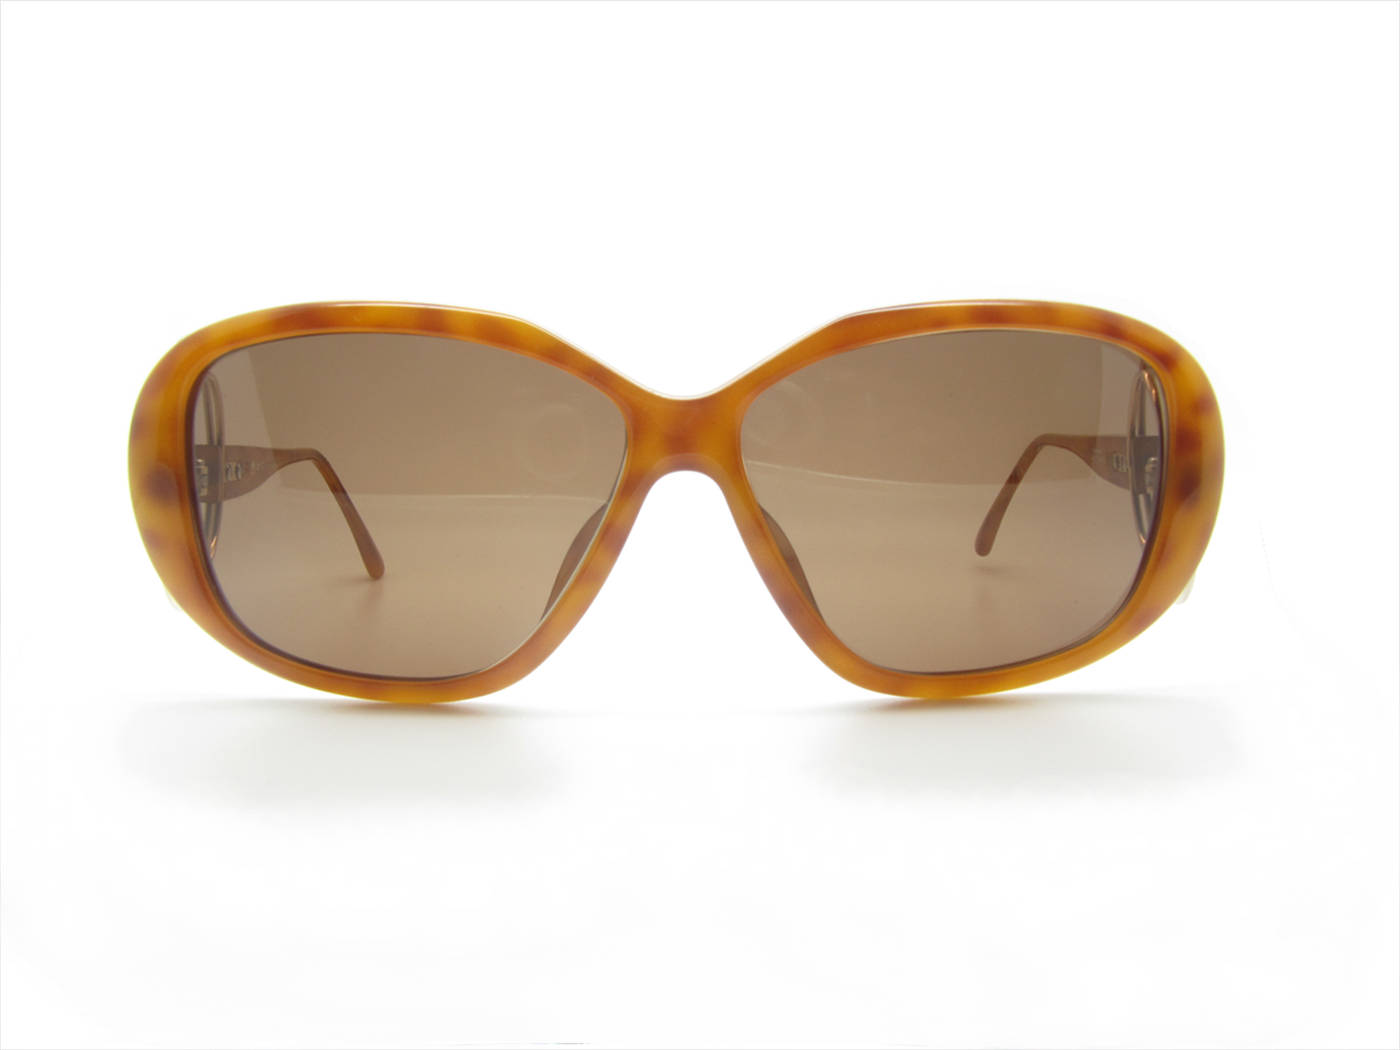 Christian Dior Sunglasses Picture